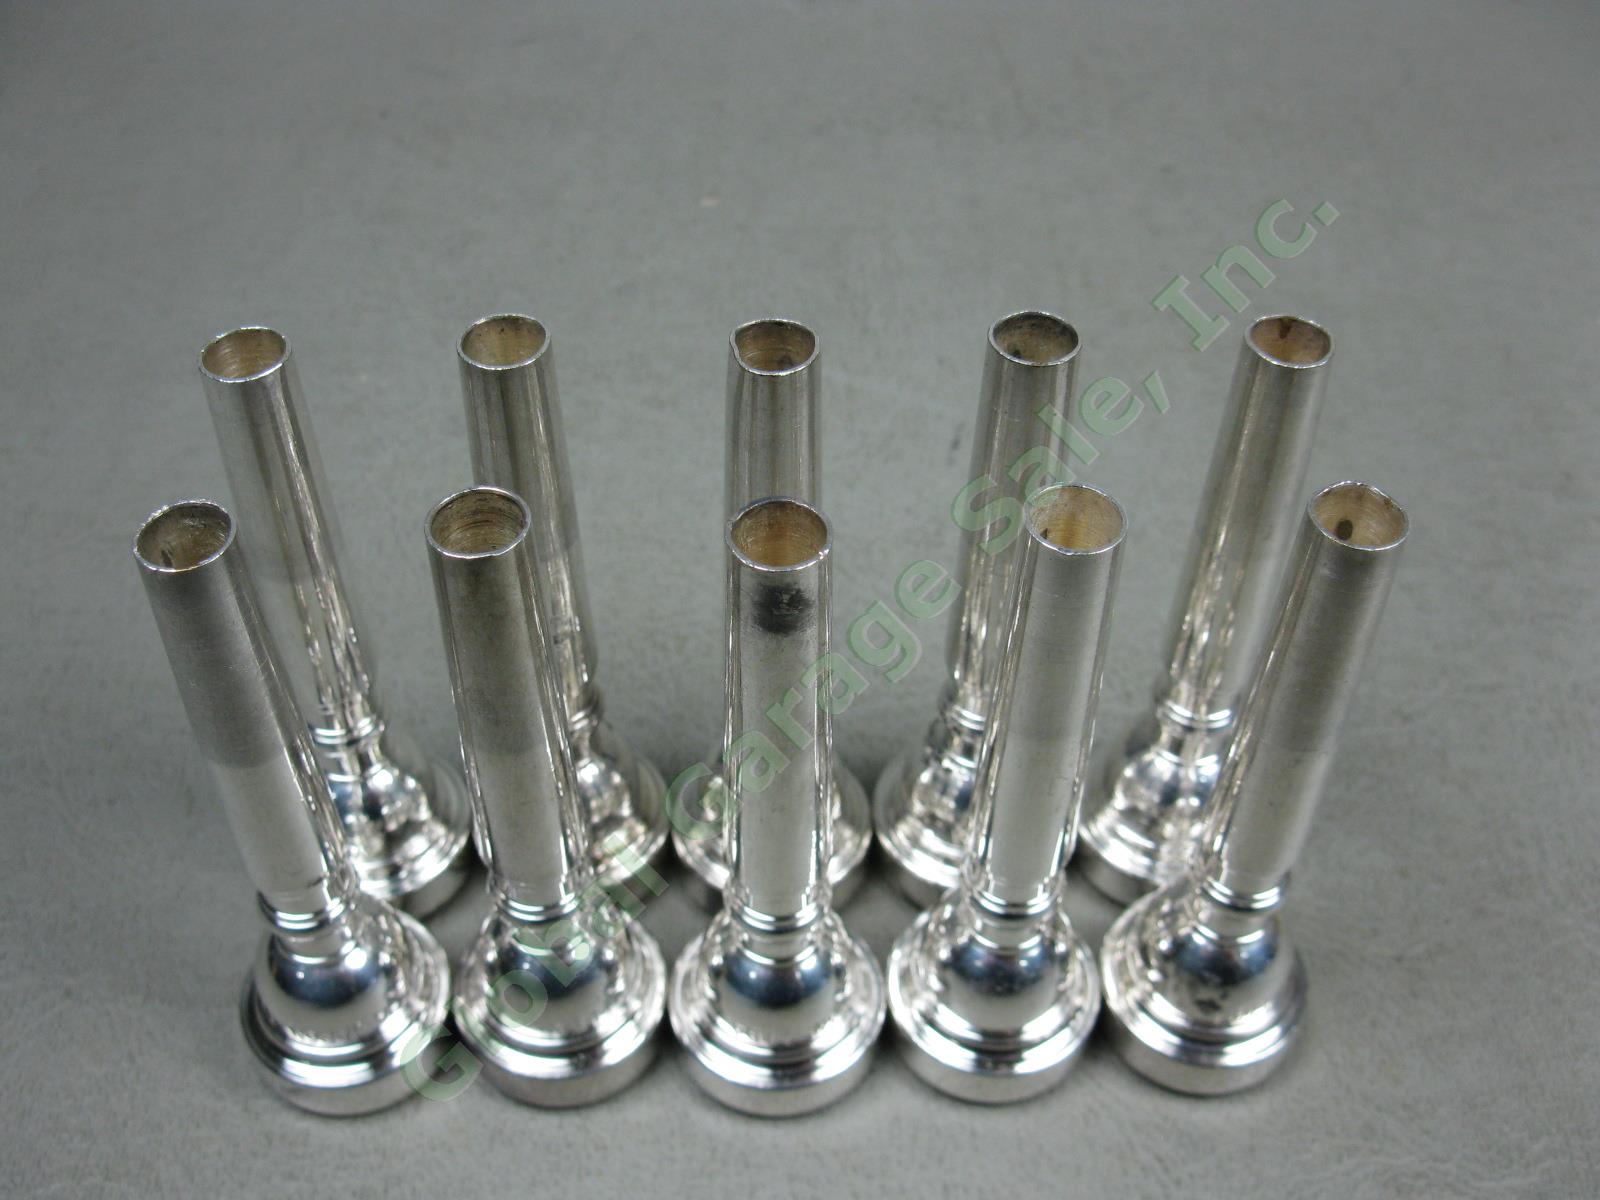 10 Yamaha Japan 11B4 Trumpet Cornet Instrument Mouthpieces Wholesale Bulk Lot NR